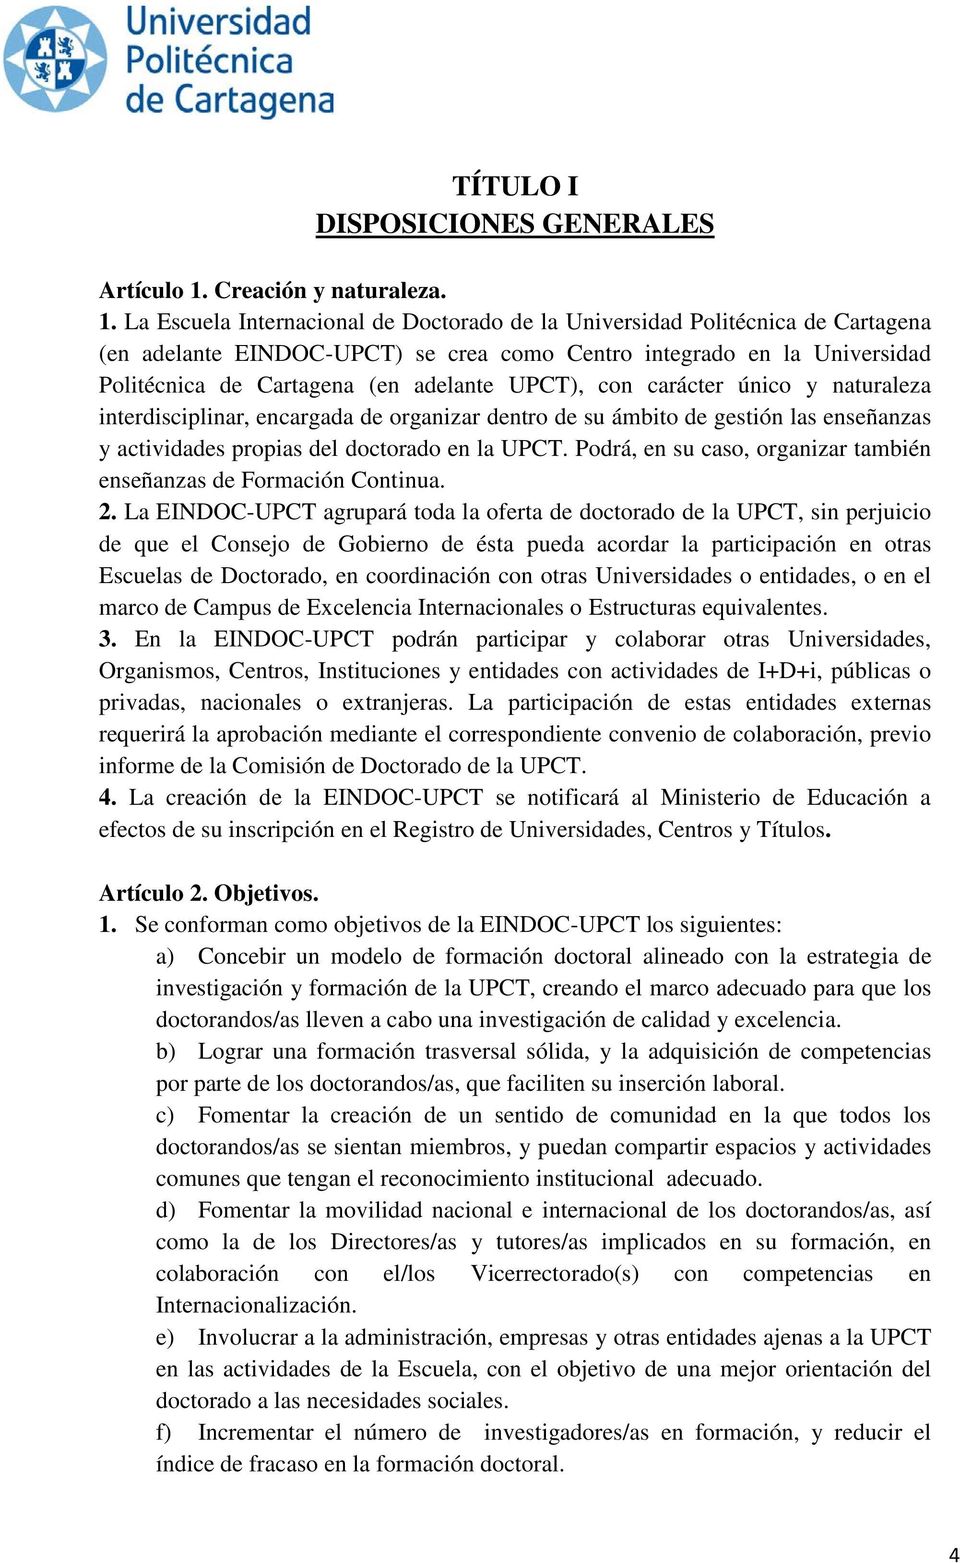 La Escuela Internacional de Doctorado de la Universidad Politécnica de Cartagena (en adelante EINDOC-UPCT) se crea como Centro integrado en la Universidad Politécnica de Cartagena (en adelante UPCT),